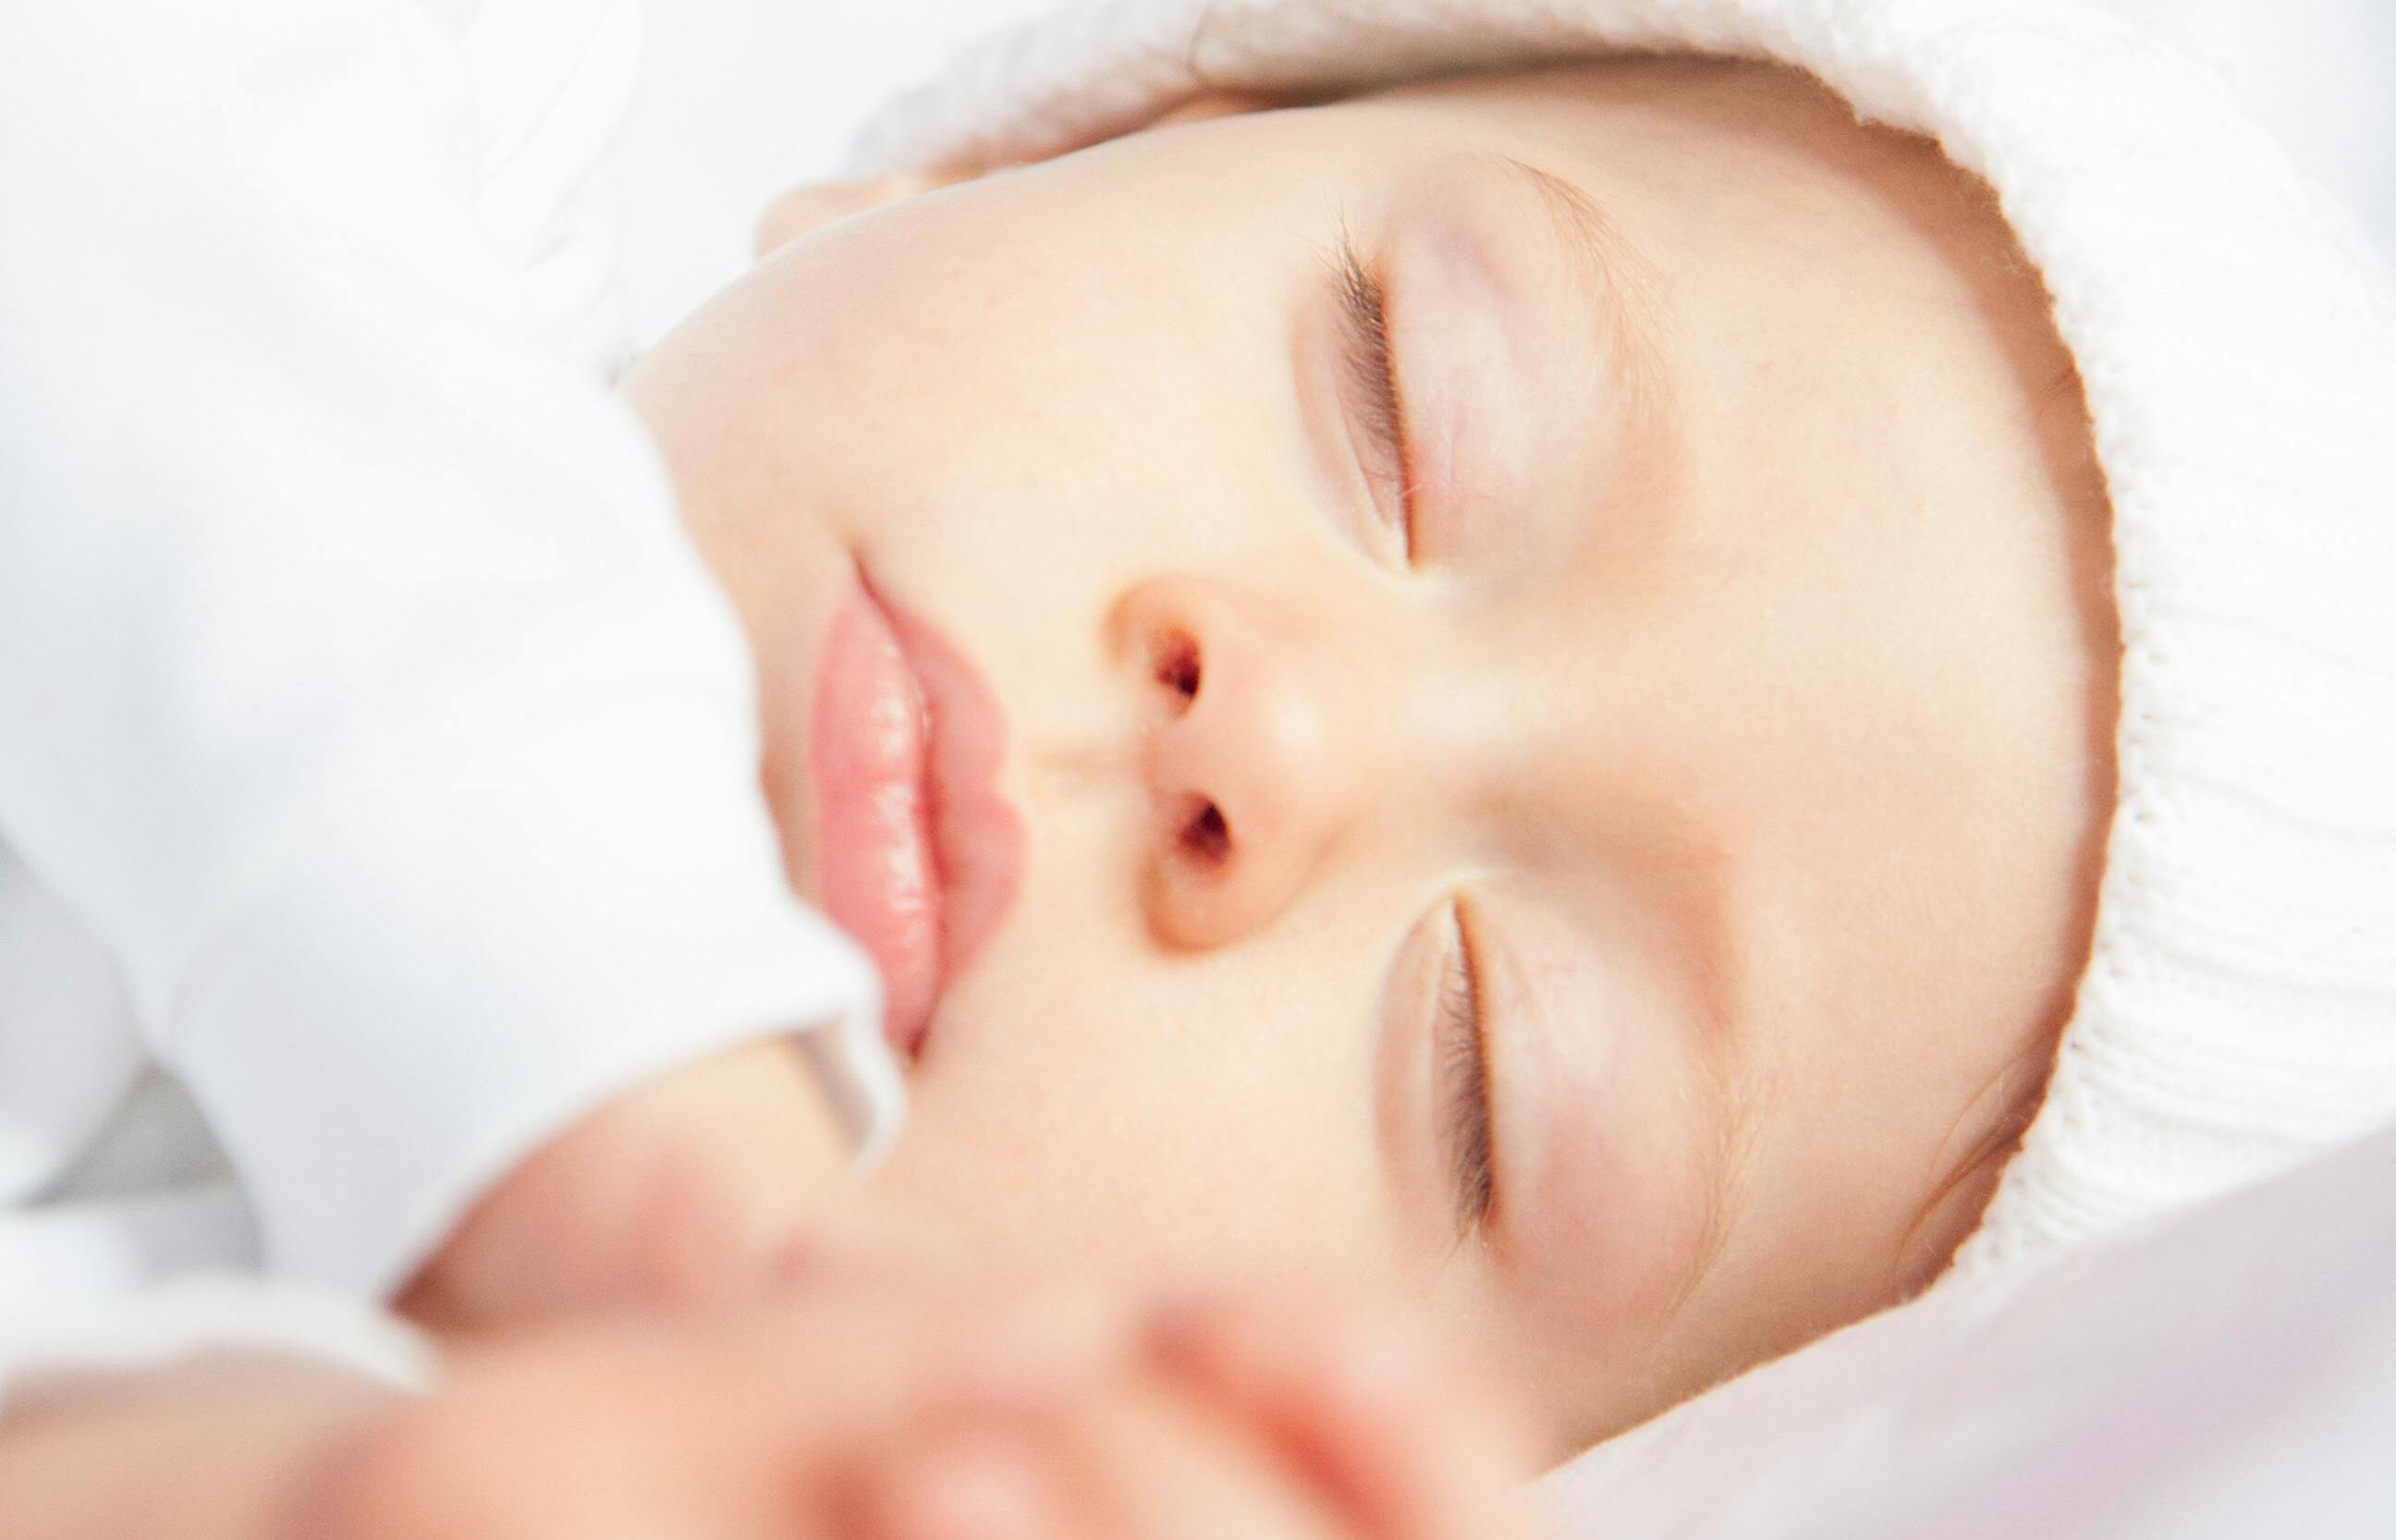 Verhindern Sie den plötzlichen Kindstod und befolgen Sie die Ratschläge zum sicheren Schlafen